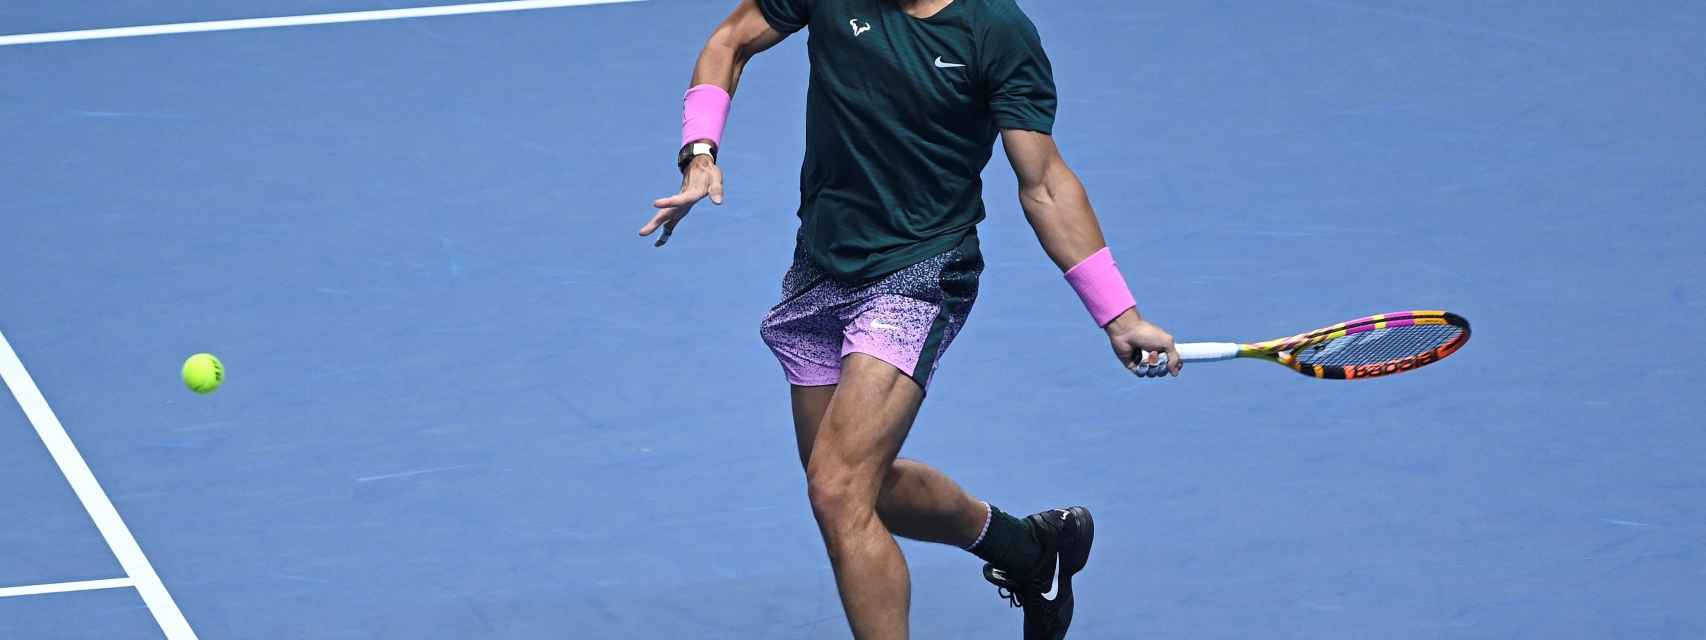 Nadal ejecuta una derecha frente a Rublev en las ATP Finals